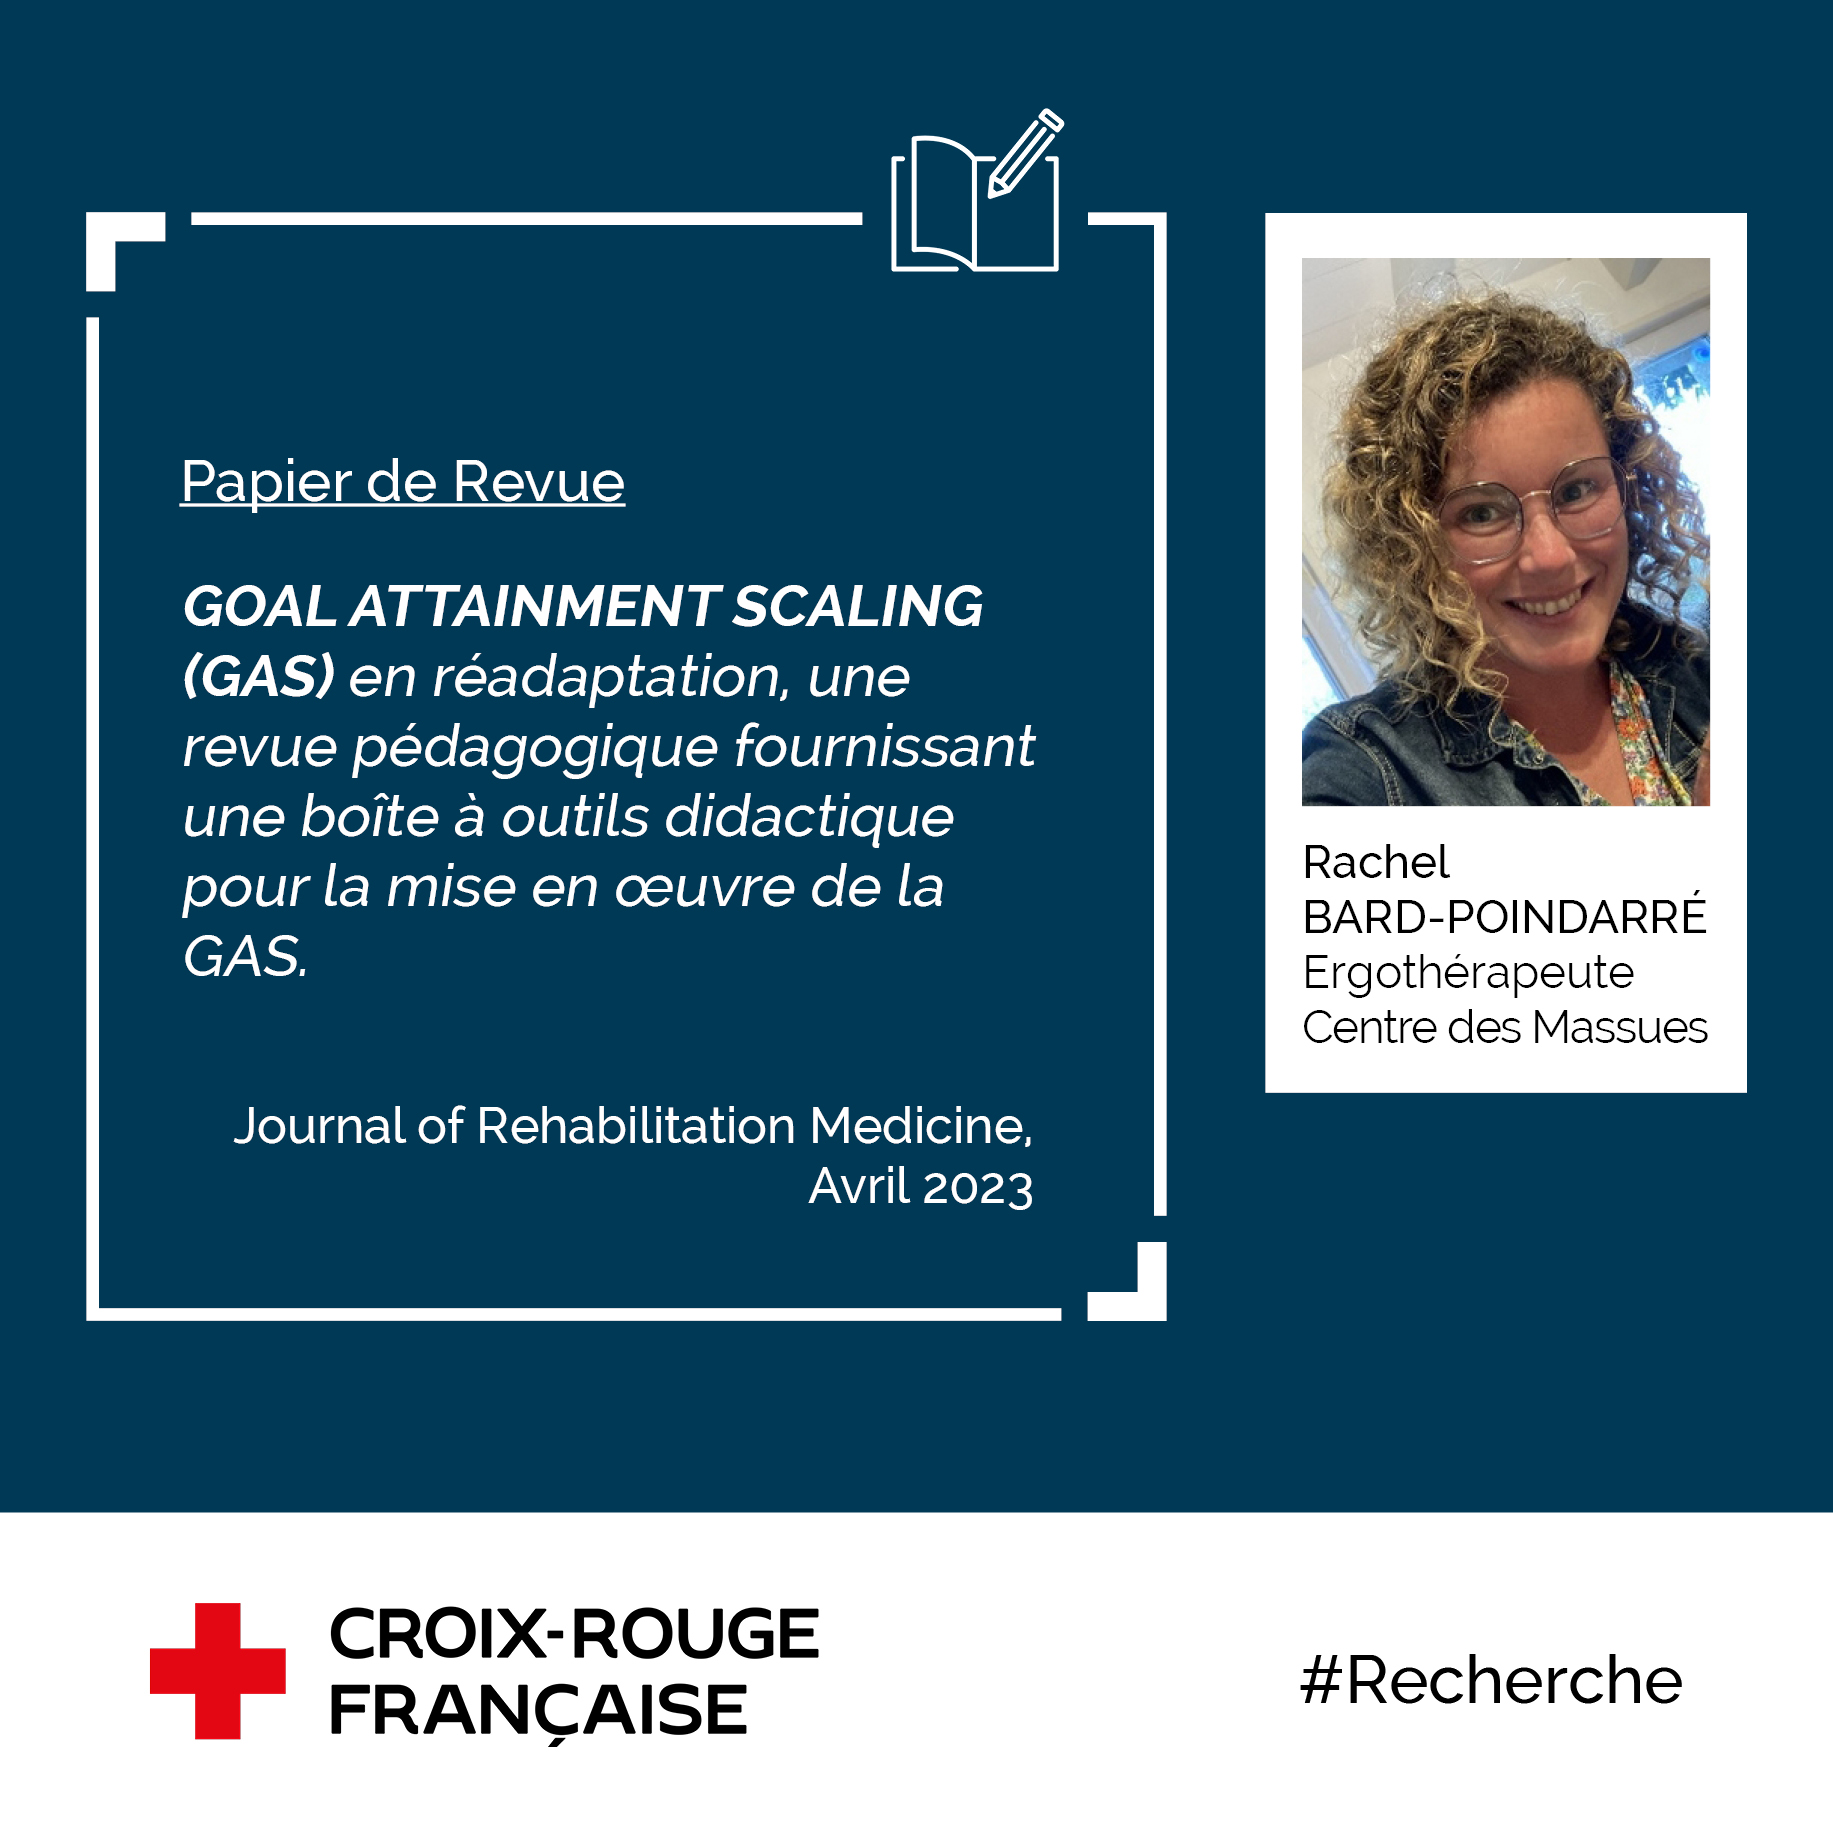 Papier de Revue publié sur la méthode GAS, par Rachel Bard-Pondarré, ergothérapeute dans le Centre des Massues de la Croix-Rouge française